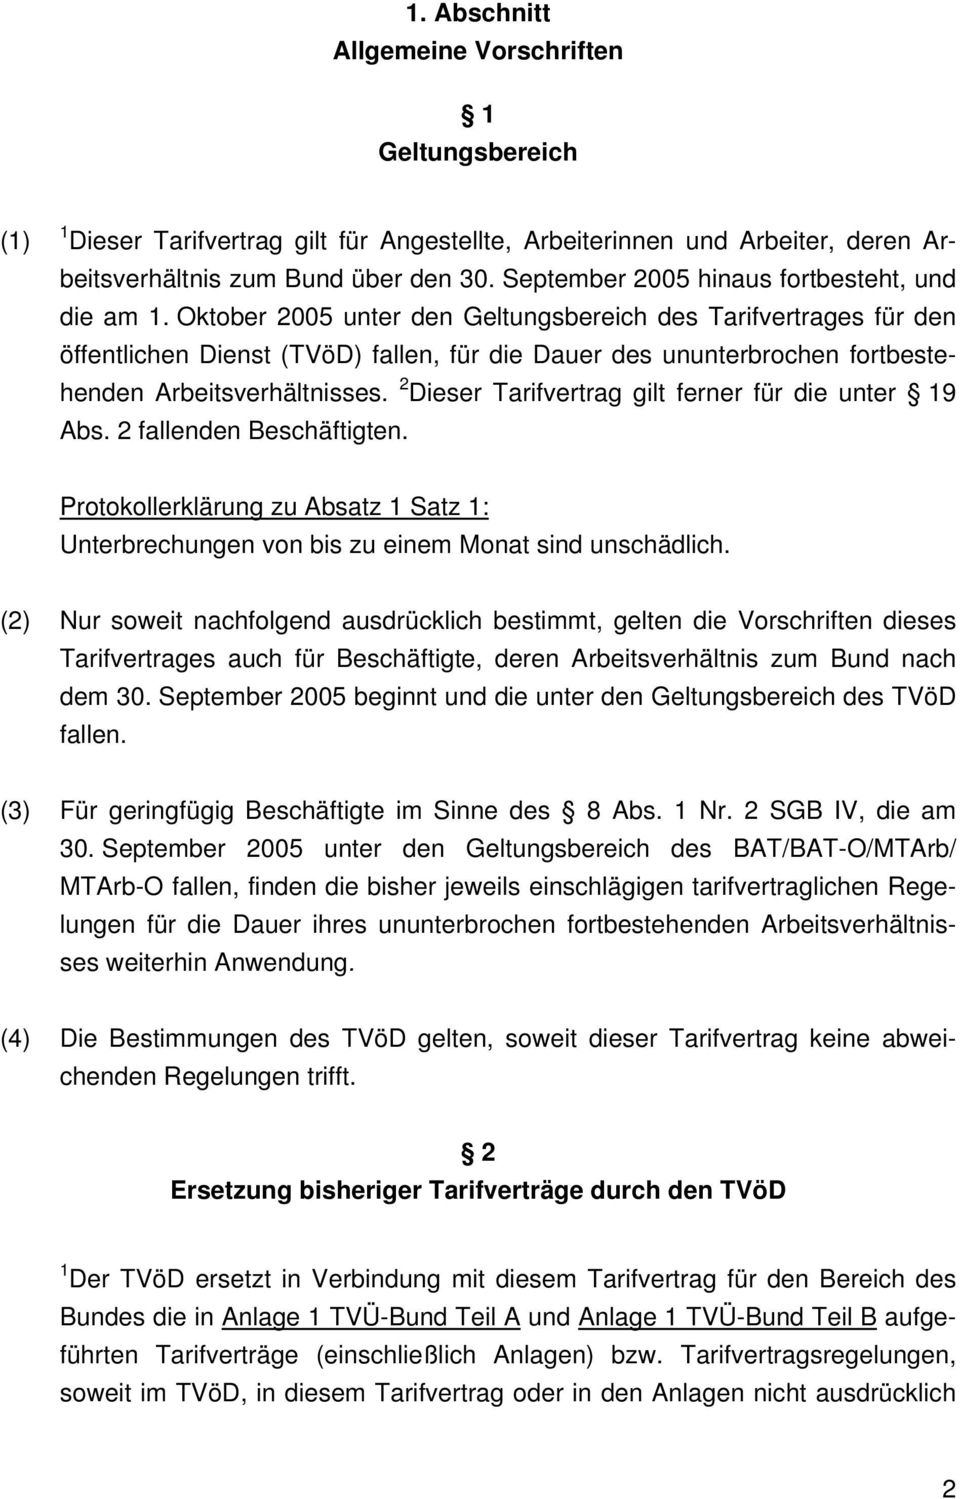 Oktober 2005 unter den Geltungsbereich des Tarifvertrages für den öffentlichen Dienst (TVöD) fallen, für die Dauer des ununterbrochen fortbestehenden Arbeitsverhältnisses.